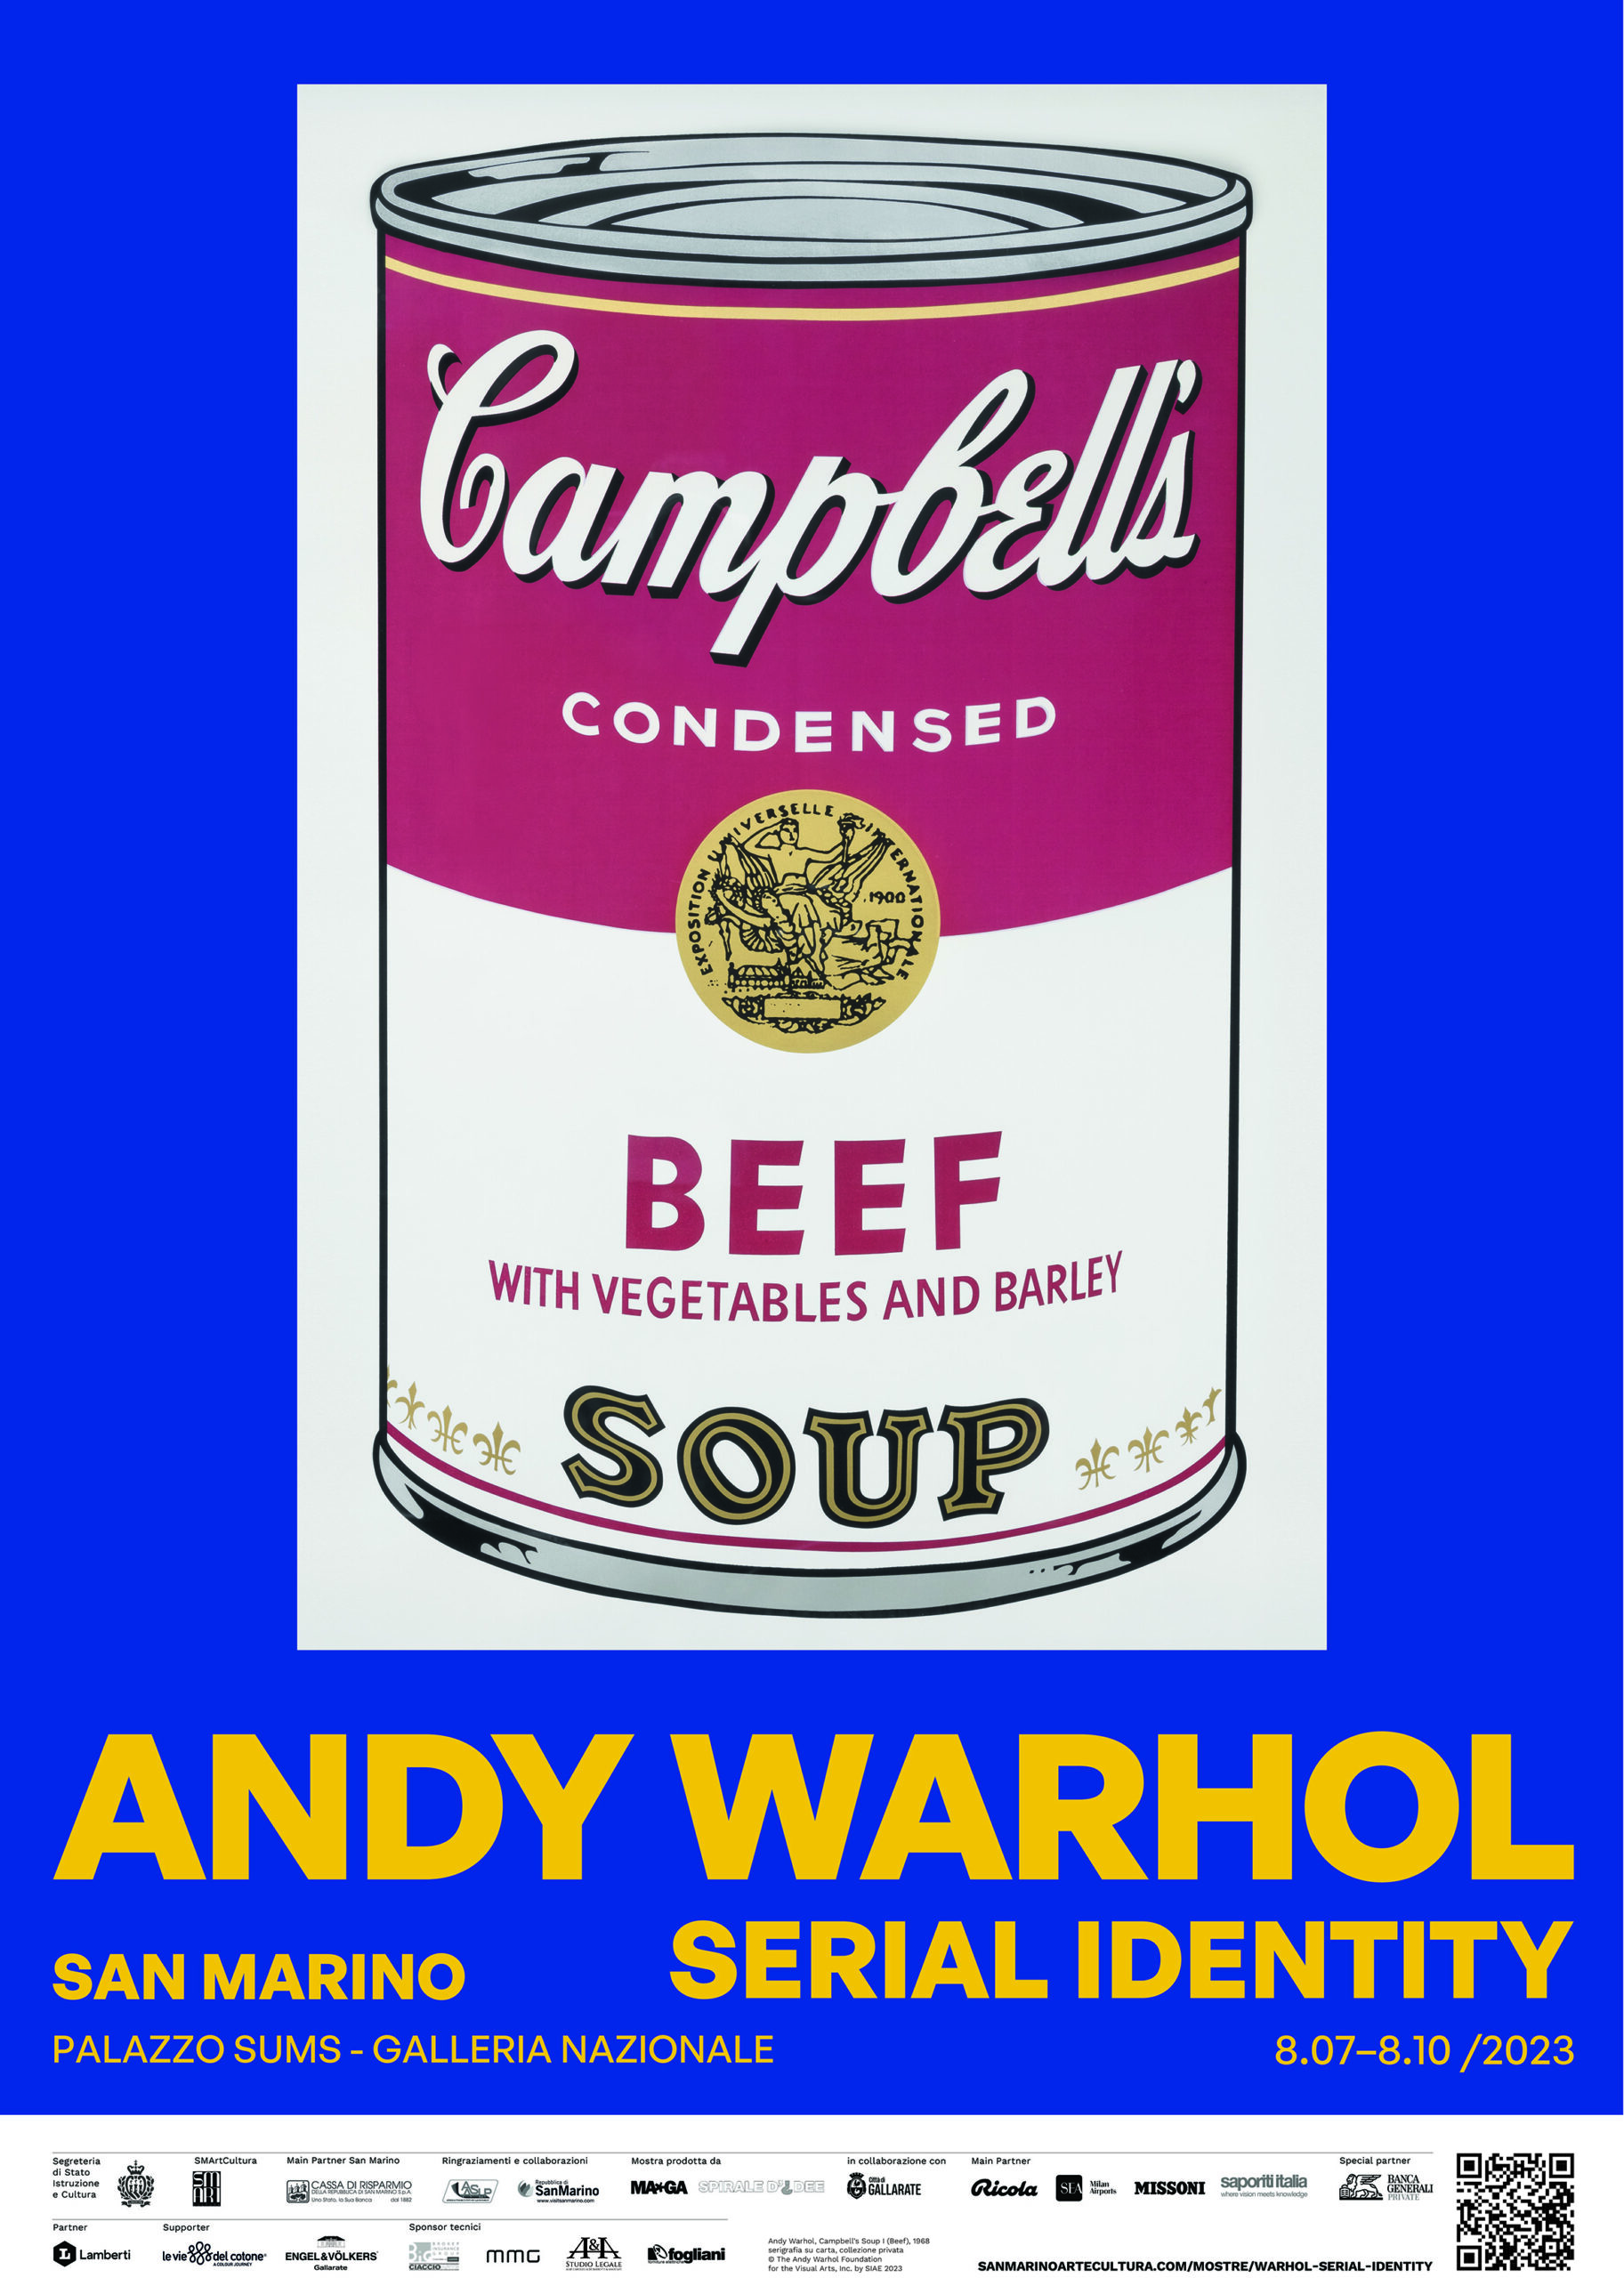 San Marino. “Andy Warhol. Serial Identity”: venerdì l’anteprima, sabato l’apertura al pubblico